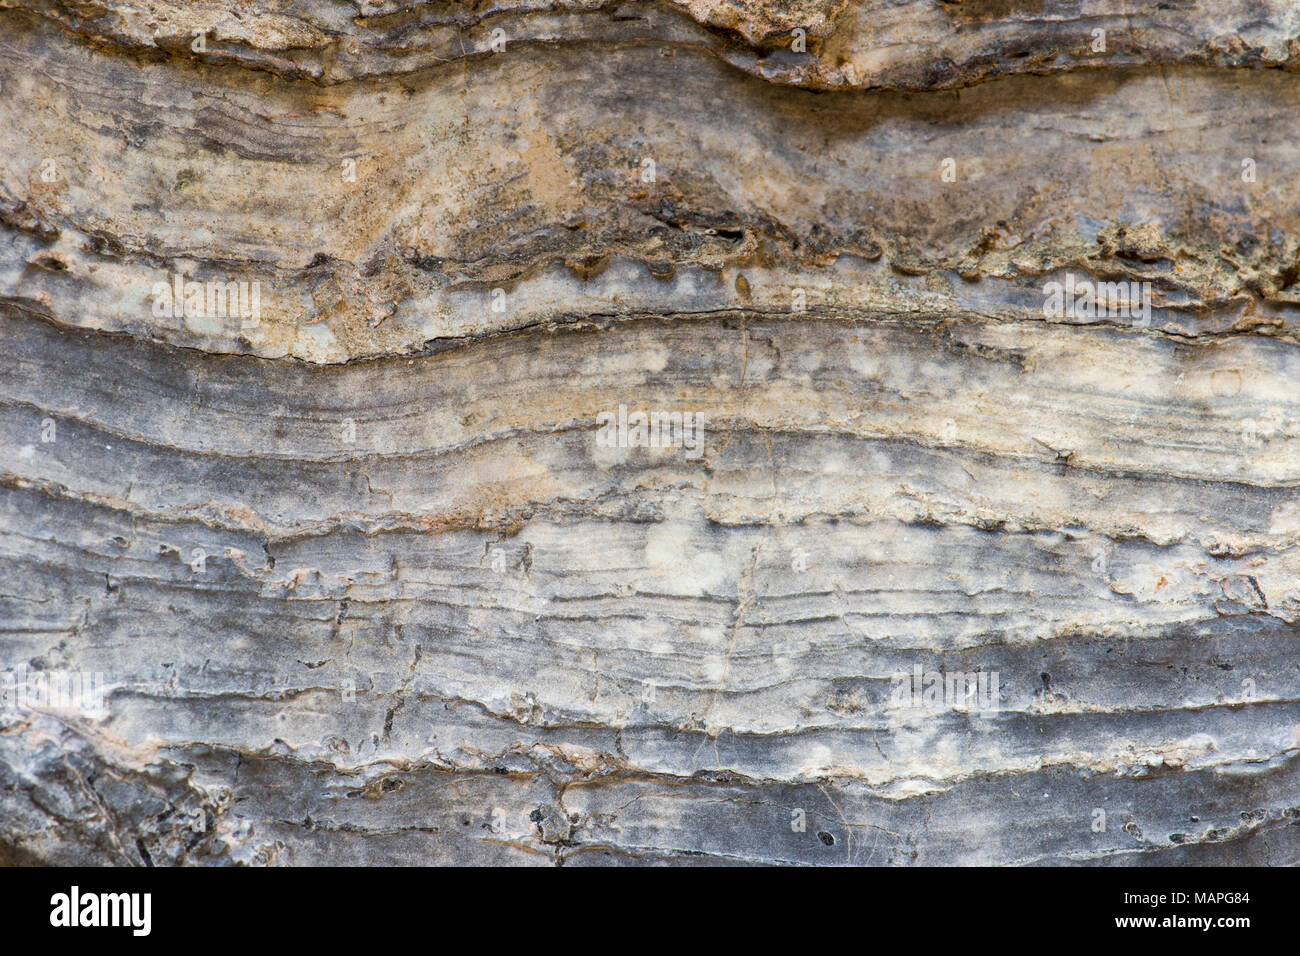 In der Nähe von stromatolite Layering (versteinerte Mikroben aus dem späten vorkambrischen oder frühen kambrischen Perioden). Stockfoto